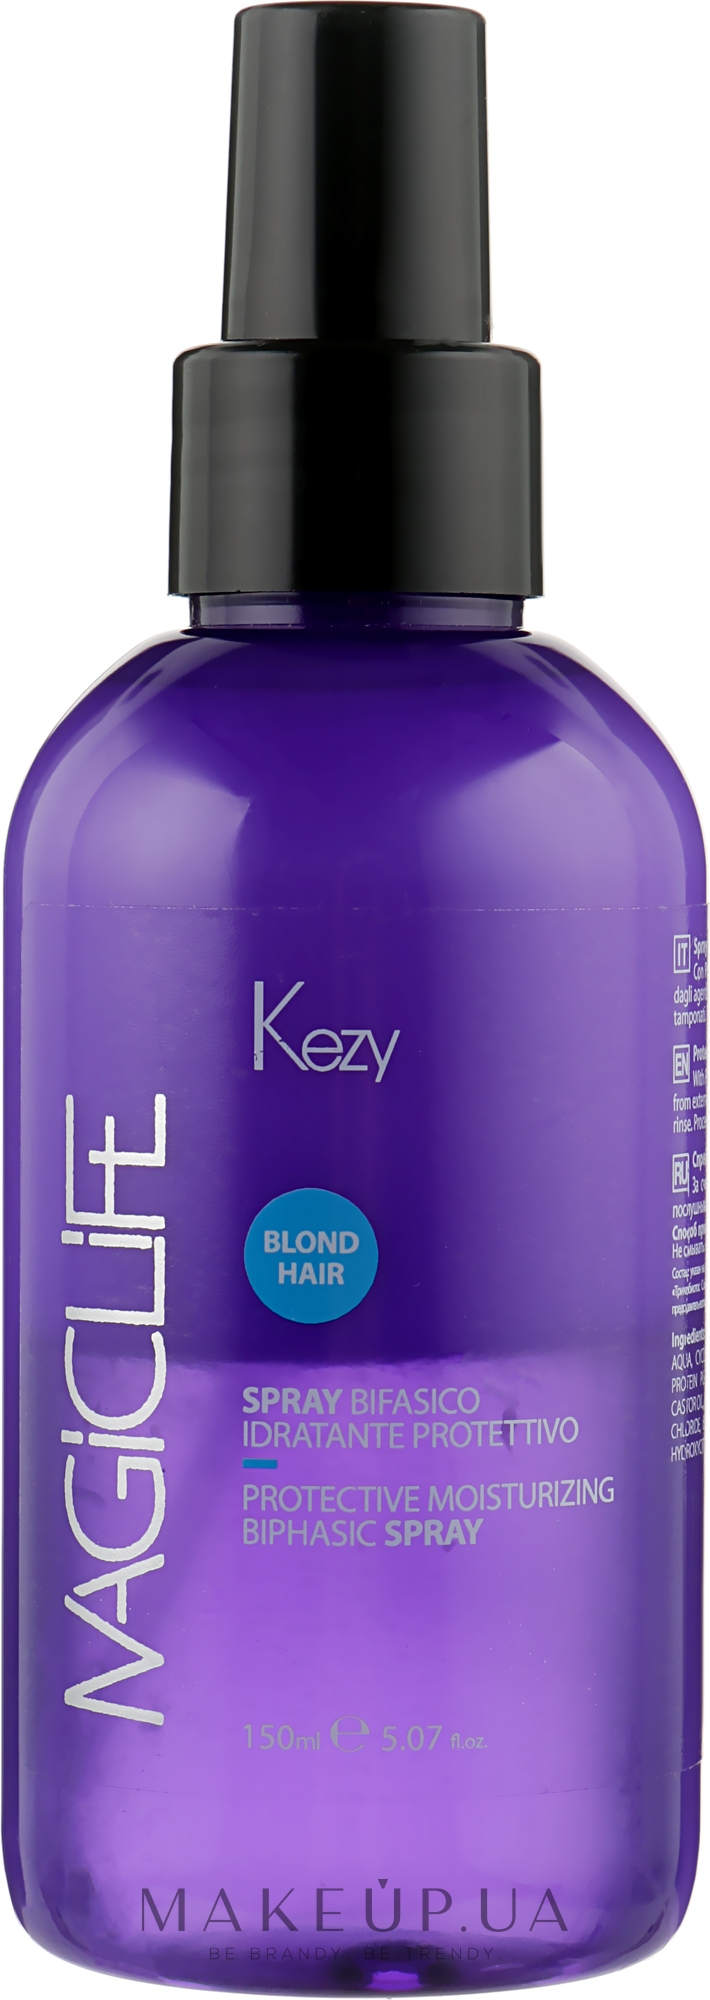 Спрей двухфазный для увлажнения волос - Kezy Magic Life Spray Bifasico Idratante  — фото 150ml